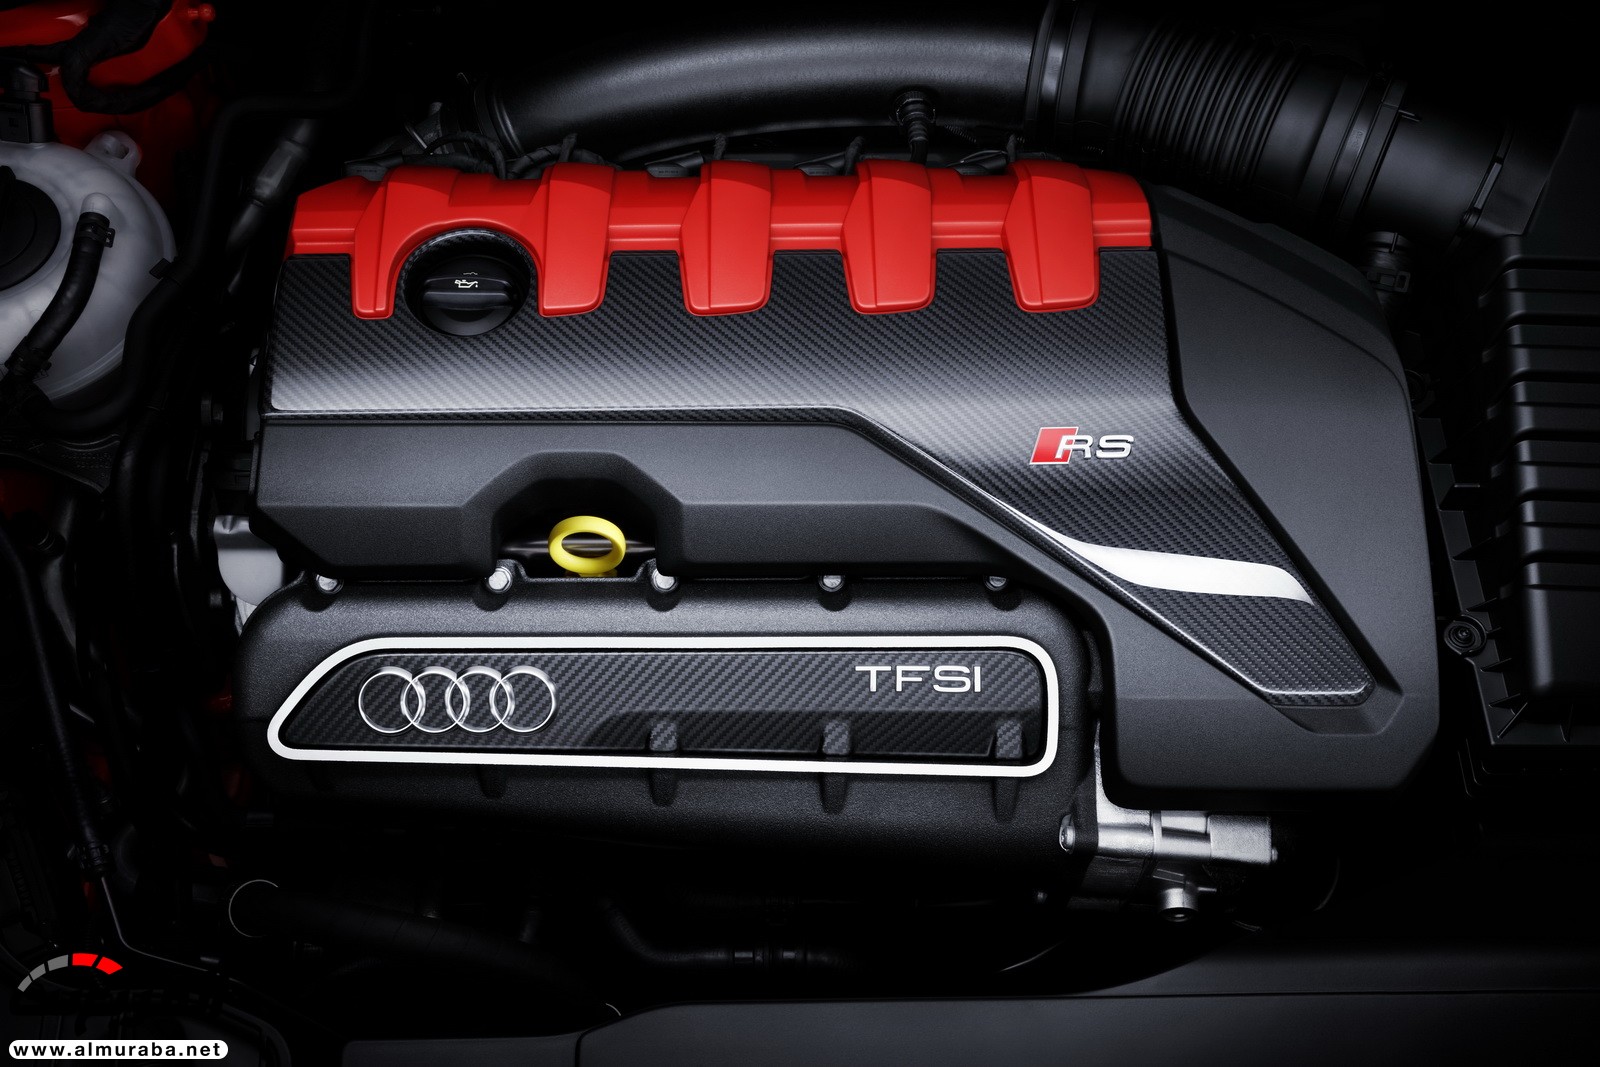 "أودي" تكشف عن RS3 الجديدة كليا 2018 بقوة 395 حصان Audi 45